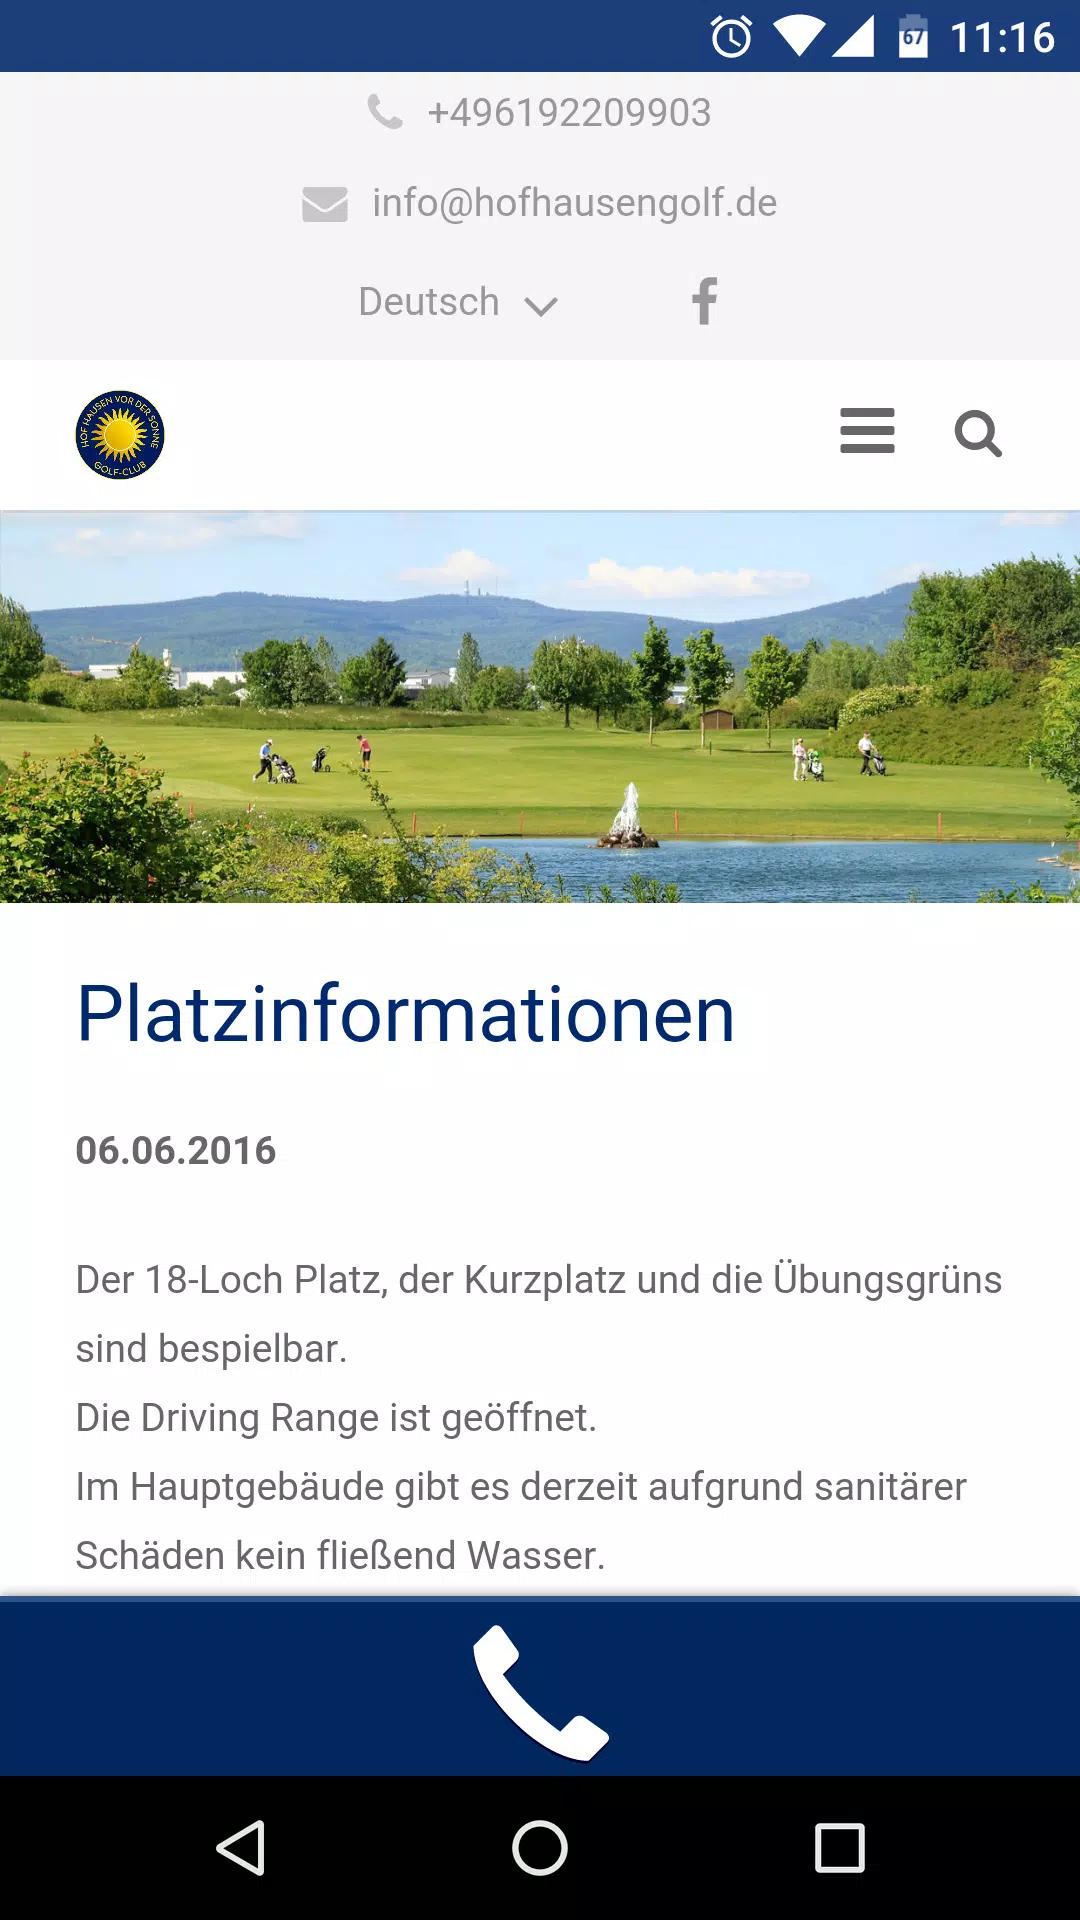 Hof Hausen Golf APK für Android herunterladen